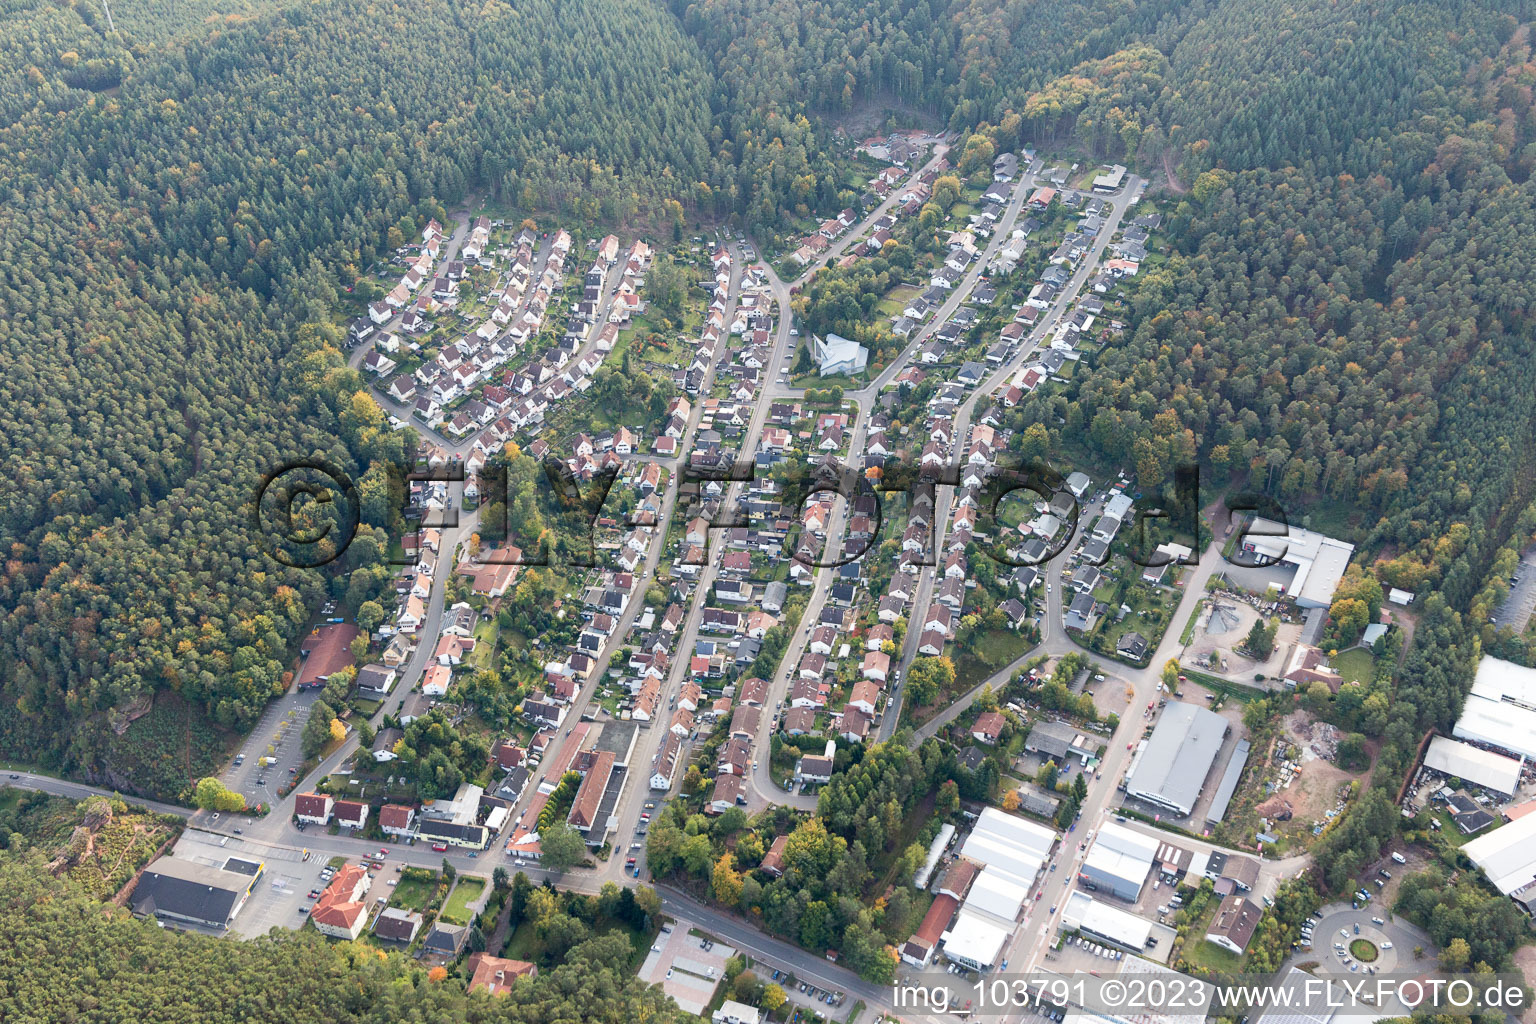 Hauenstein im Bundesland Rheinland-Pfalz, Deutschland von der Drohne aus gesehen